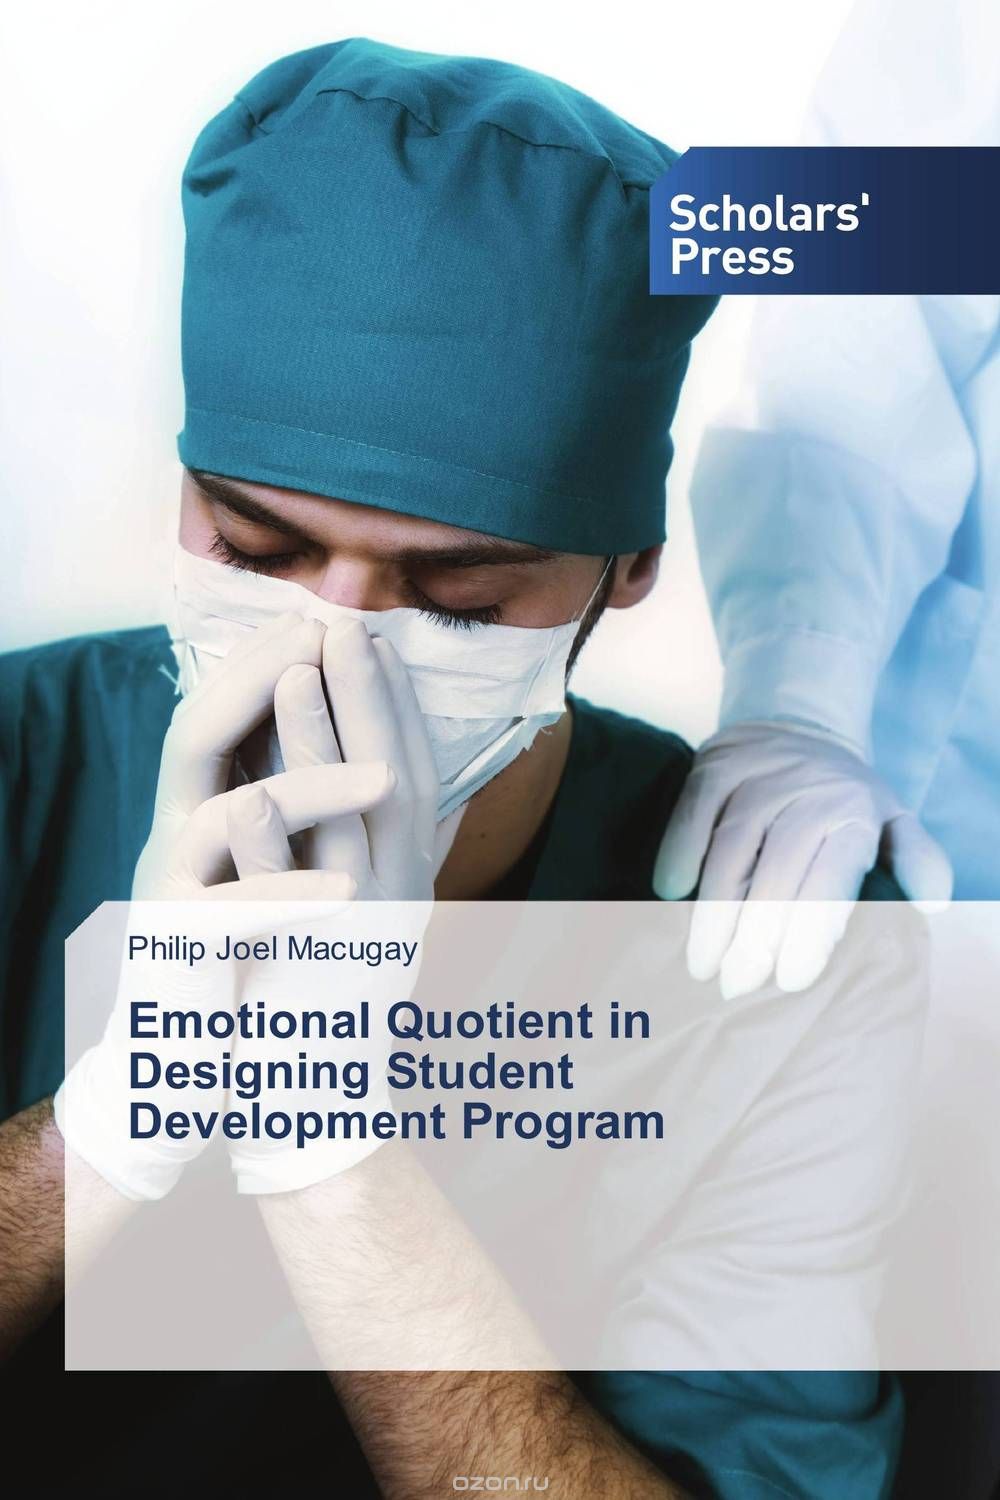 Скачать книгу "Emotional Quotient in Designing Student Development Program"